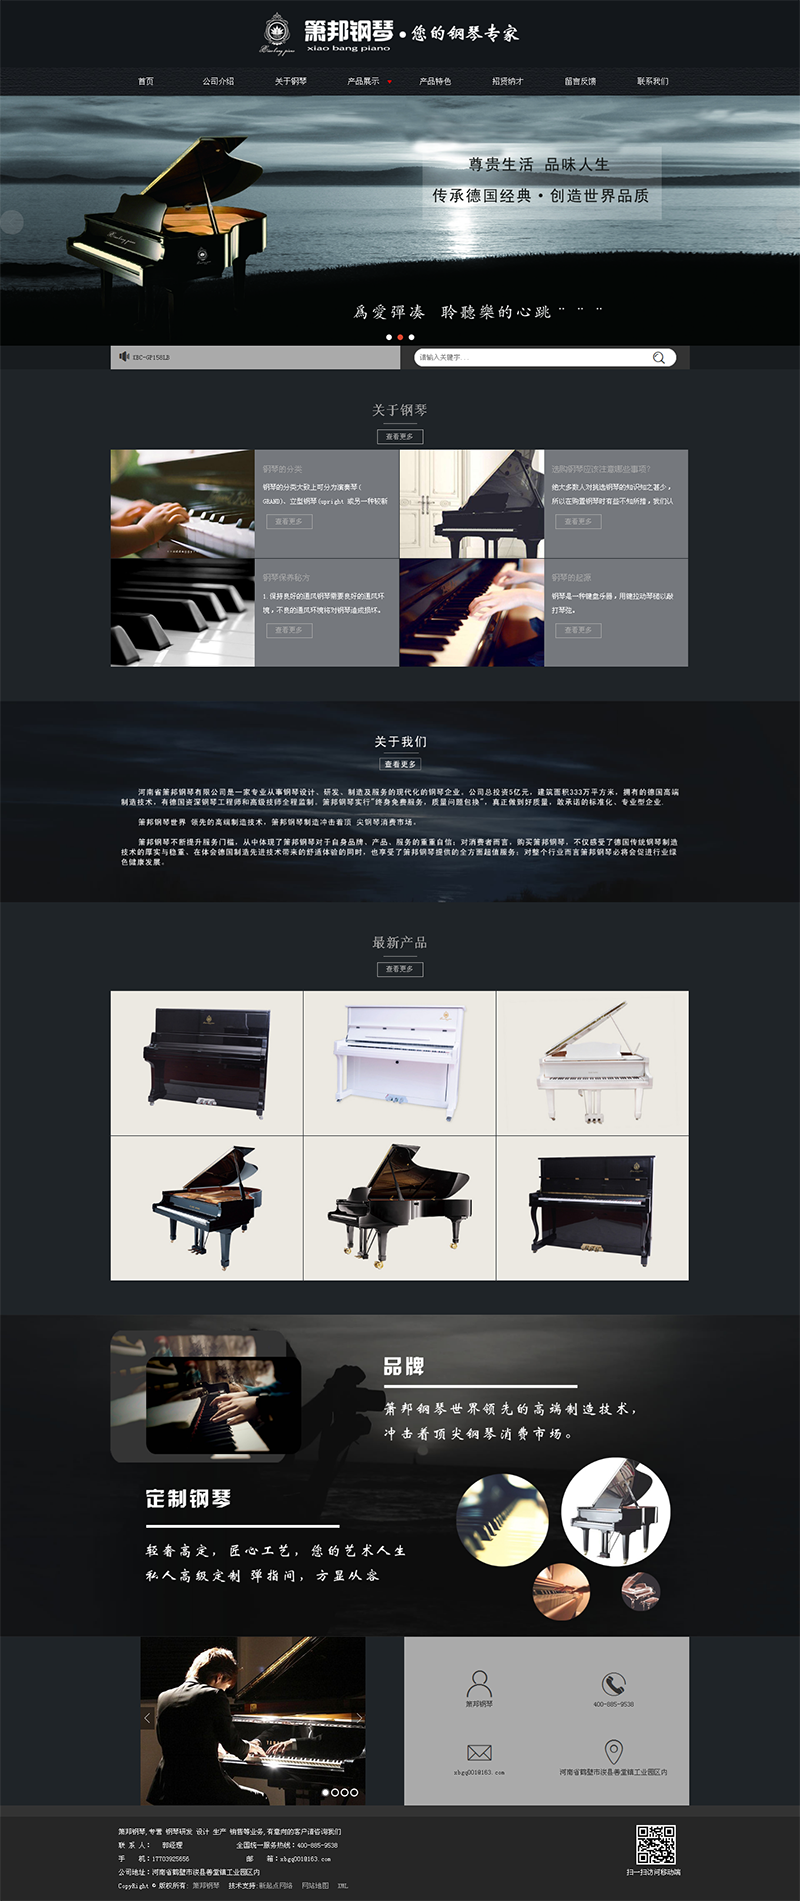 河南省箫邦钢琴有限公司